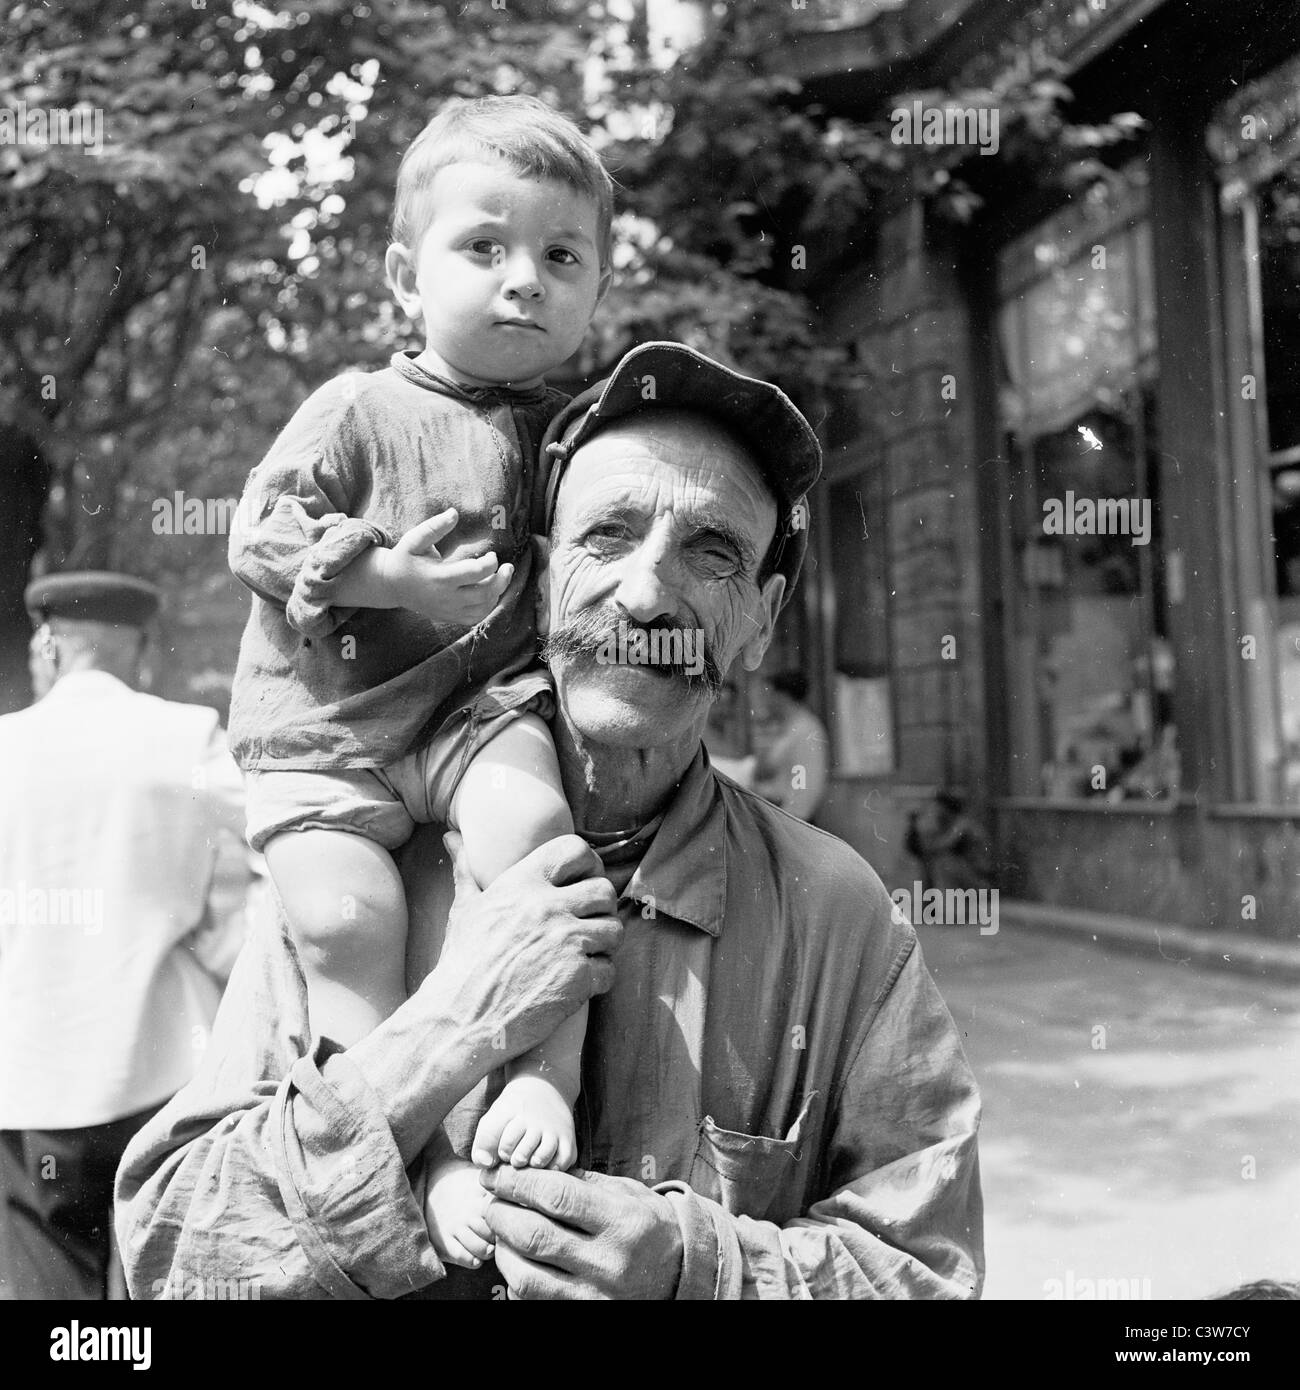 der 1950er Jahre in dieses Geschichtsbild durch J Allan Cash sehen wir einen Vater hält seine jungen Kind auf seiner Schulter in Tiflis, Georgien. Stockfoto